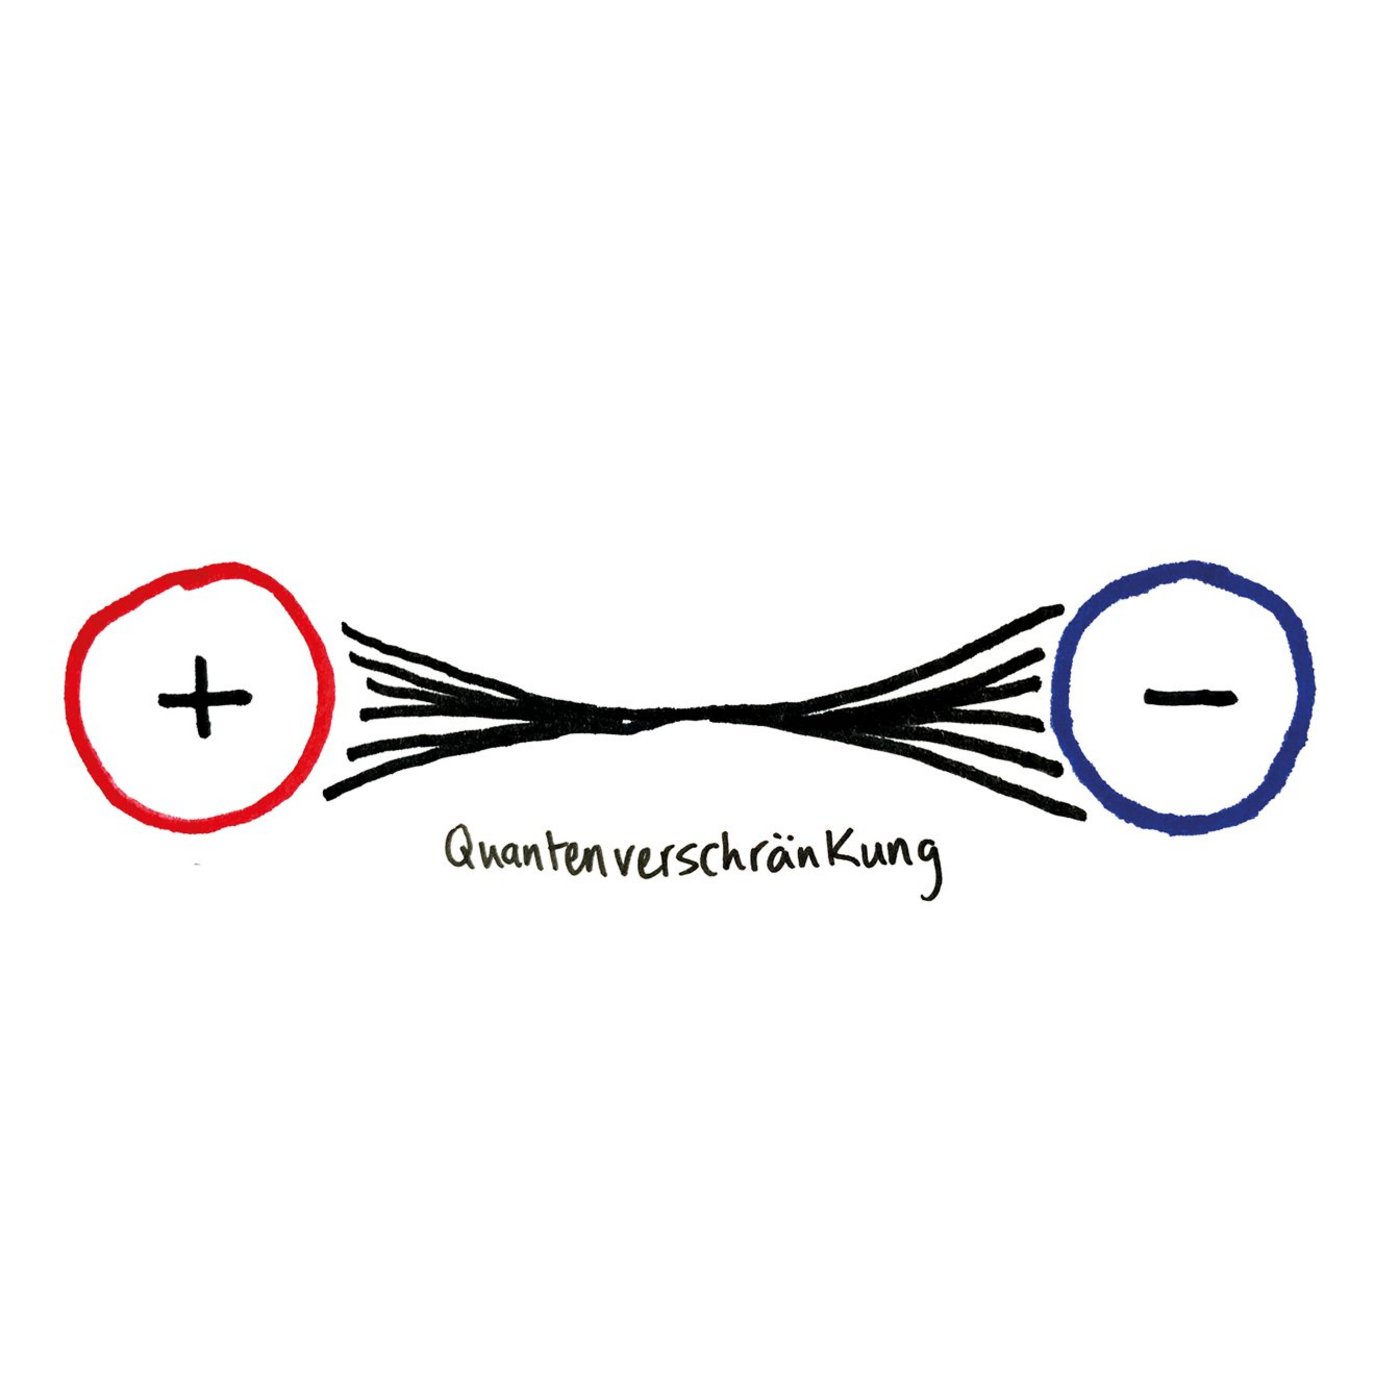 Zeichnung eines Pluspoles links und eines Minuspoles rechts. Die Pole sind durch Striche miteinander verbunden.